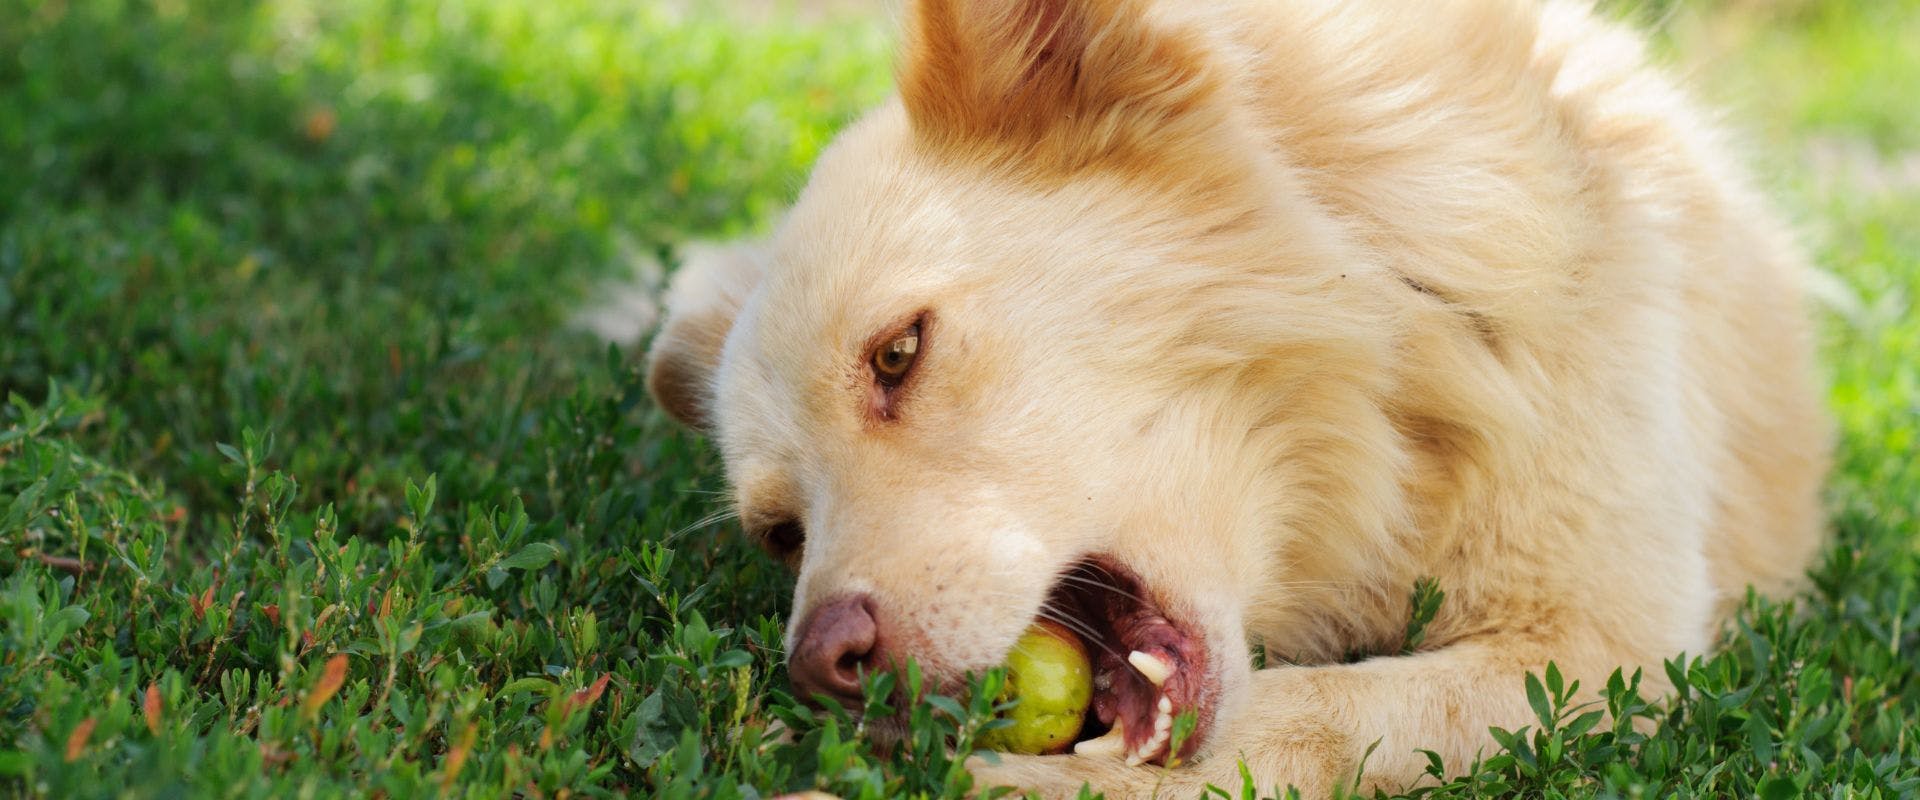 beige-coloured dog eating apple